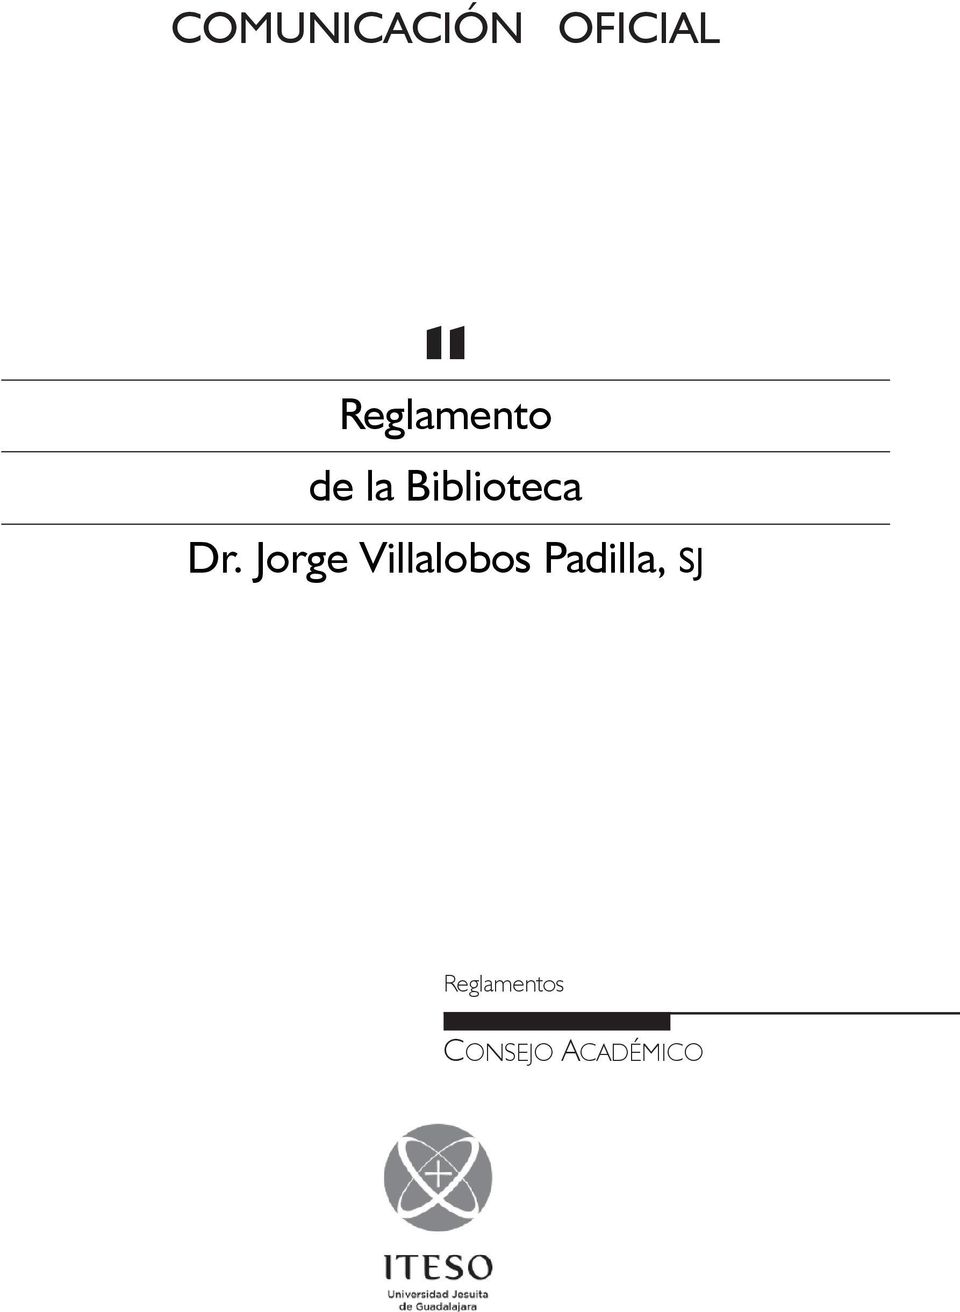 Dr. Jorge Villalobos